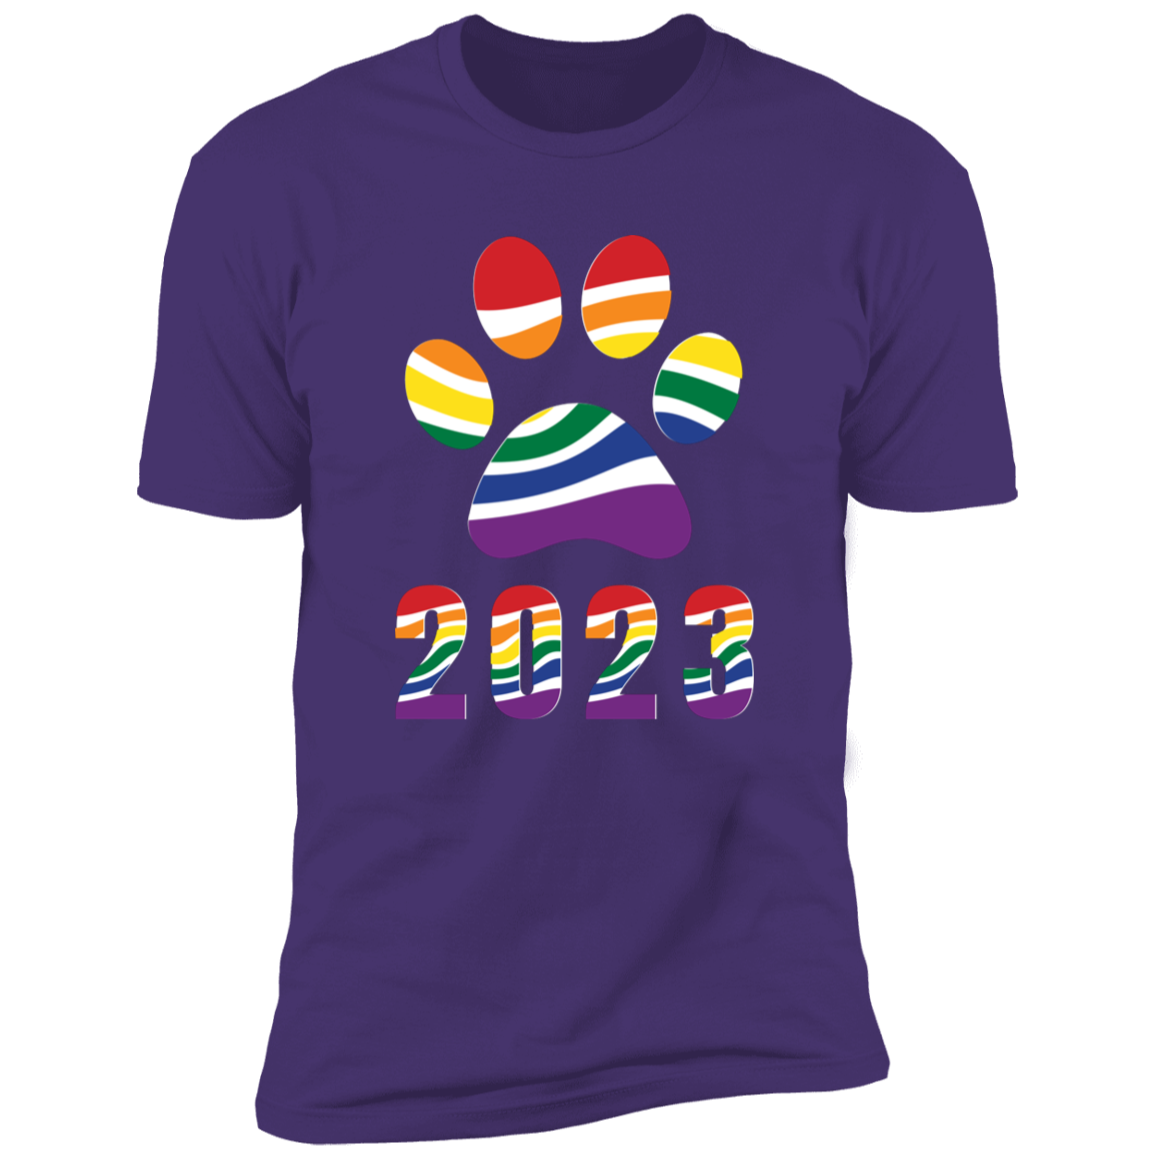 Pride Paw 2023 (Retro) Pride T-shirt, Paw Pride Dog Shirt for humans, in purple rush